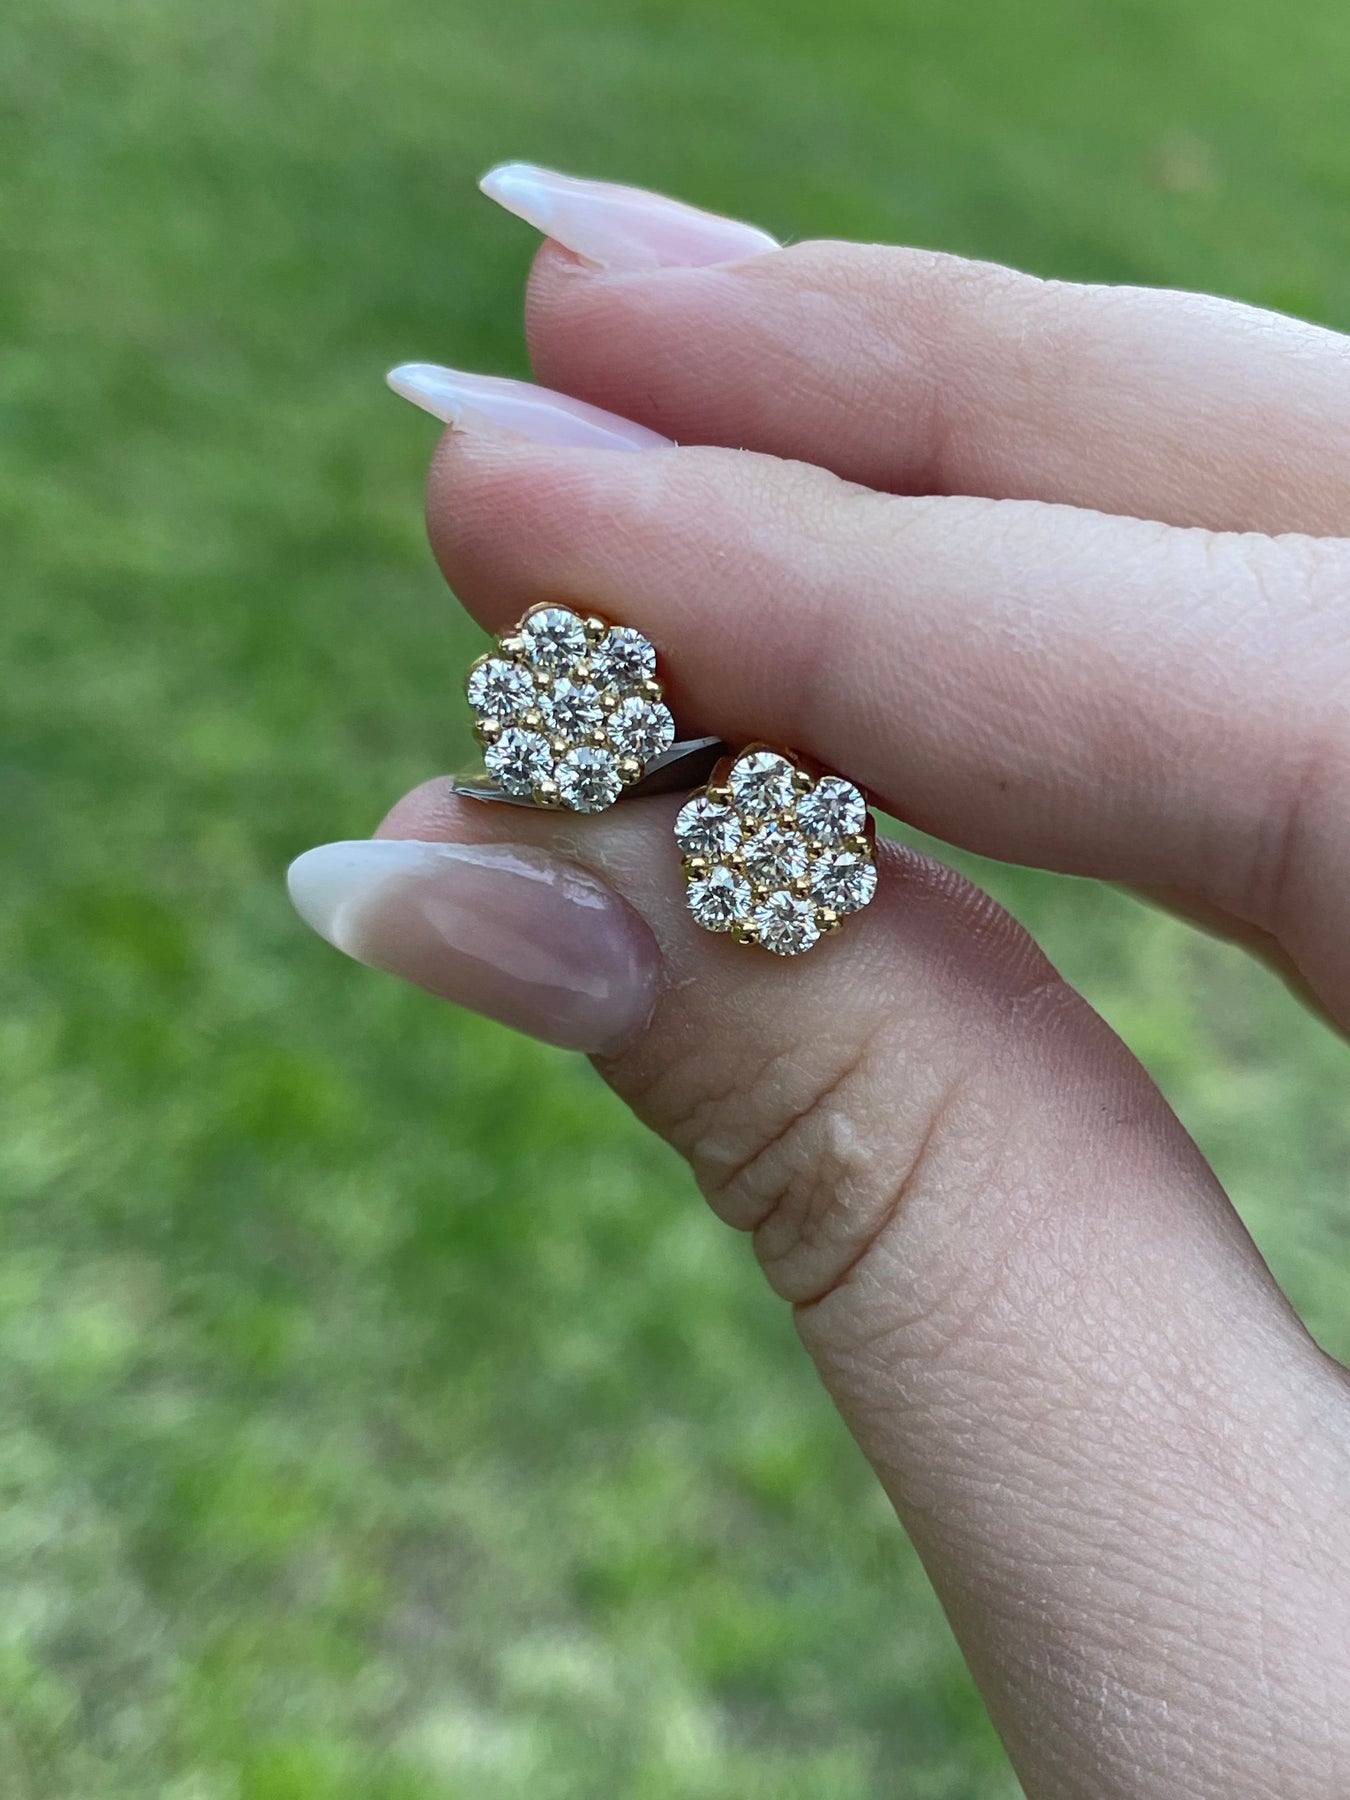 14K Yellow Gold 1/3 Ct.tw. Diamond Flower Studs Earring - Earrings - Jewelry